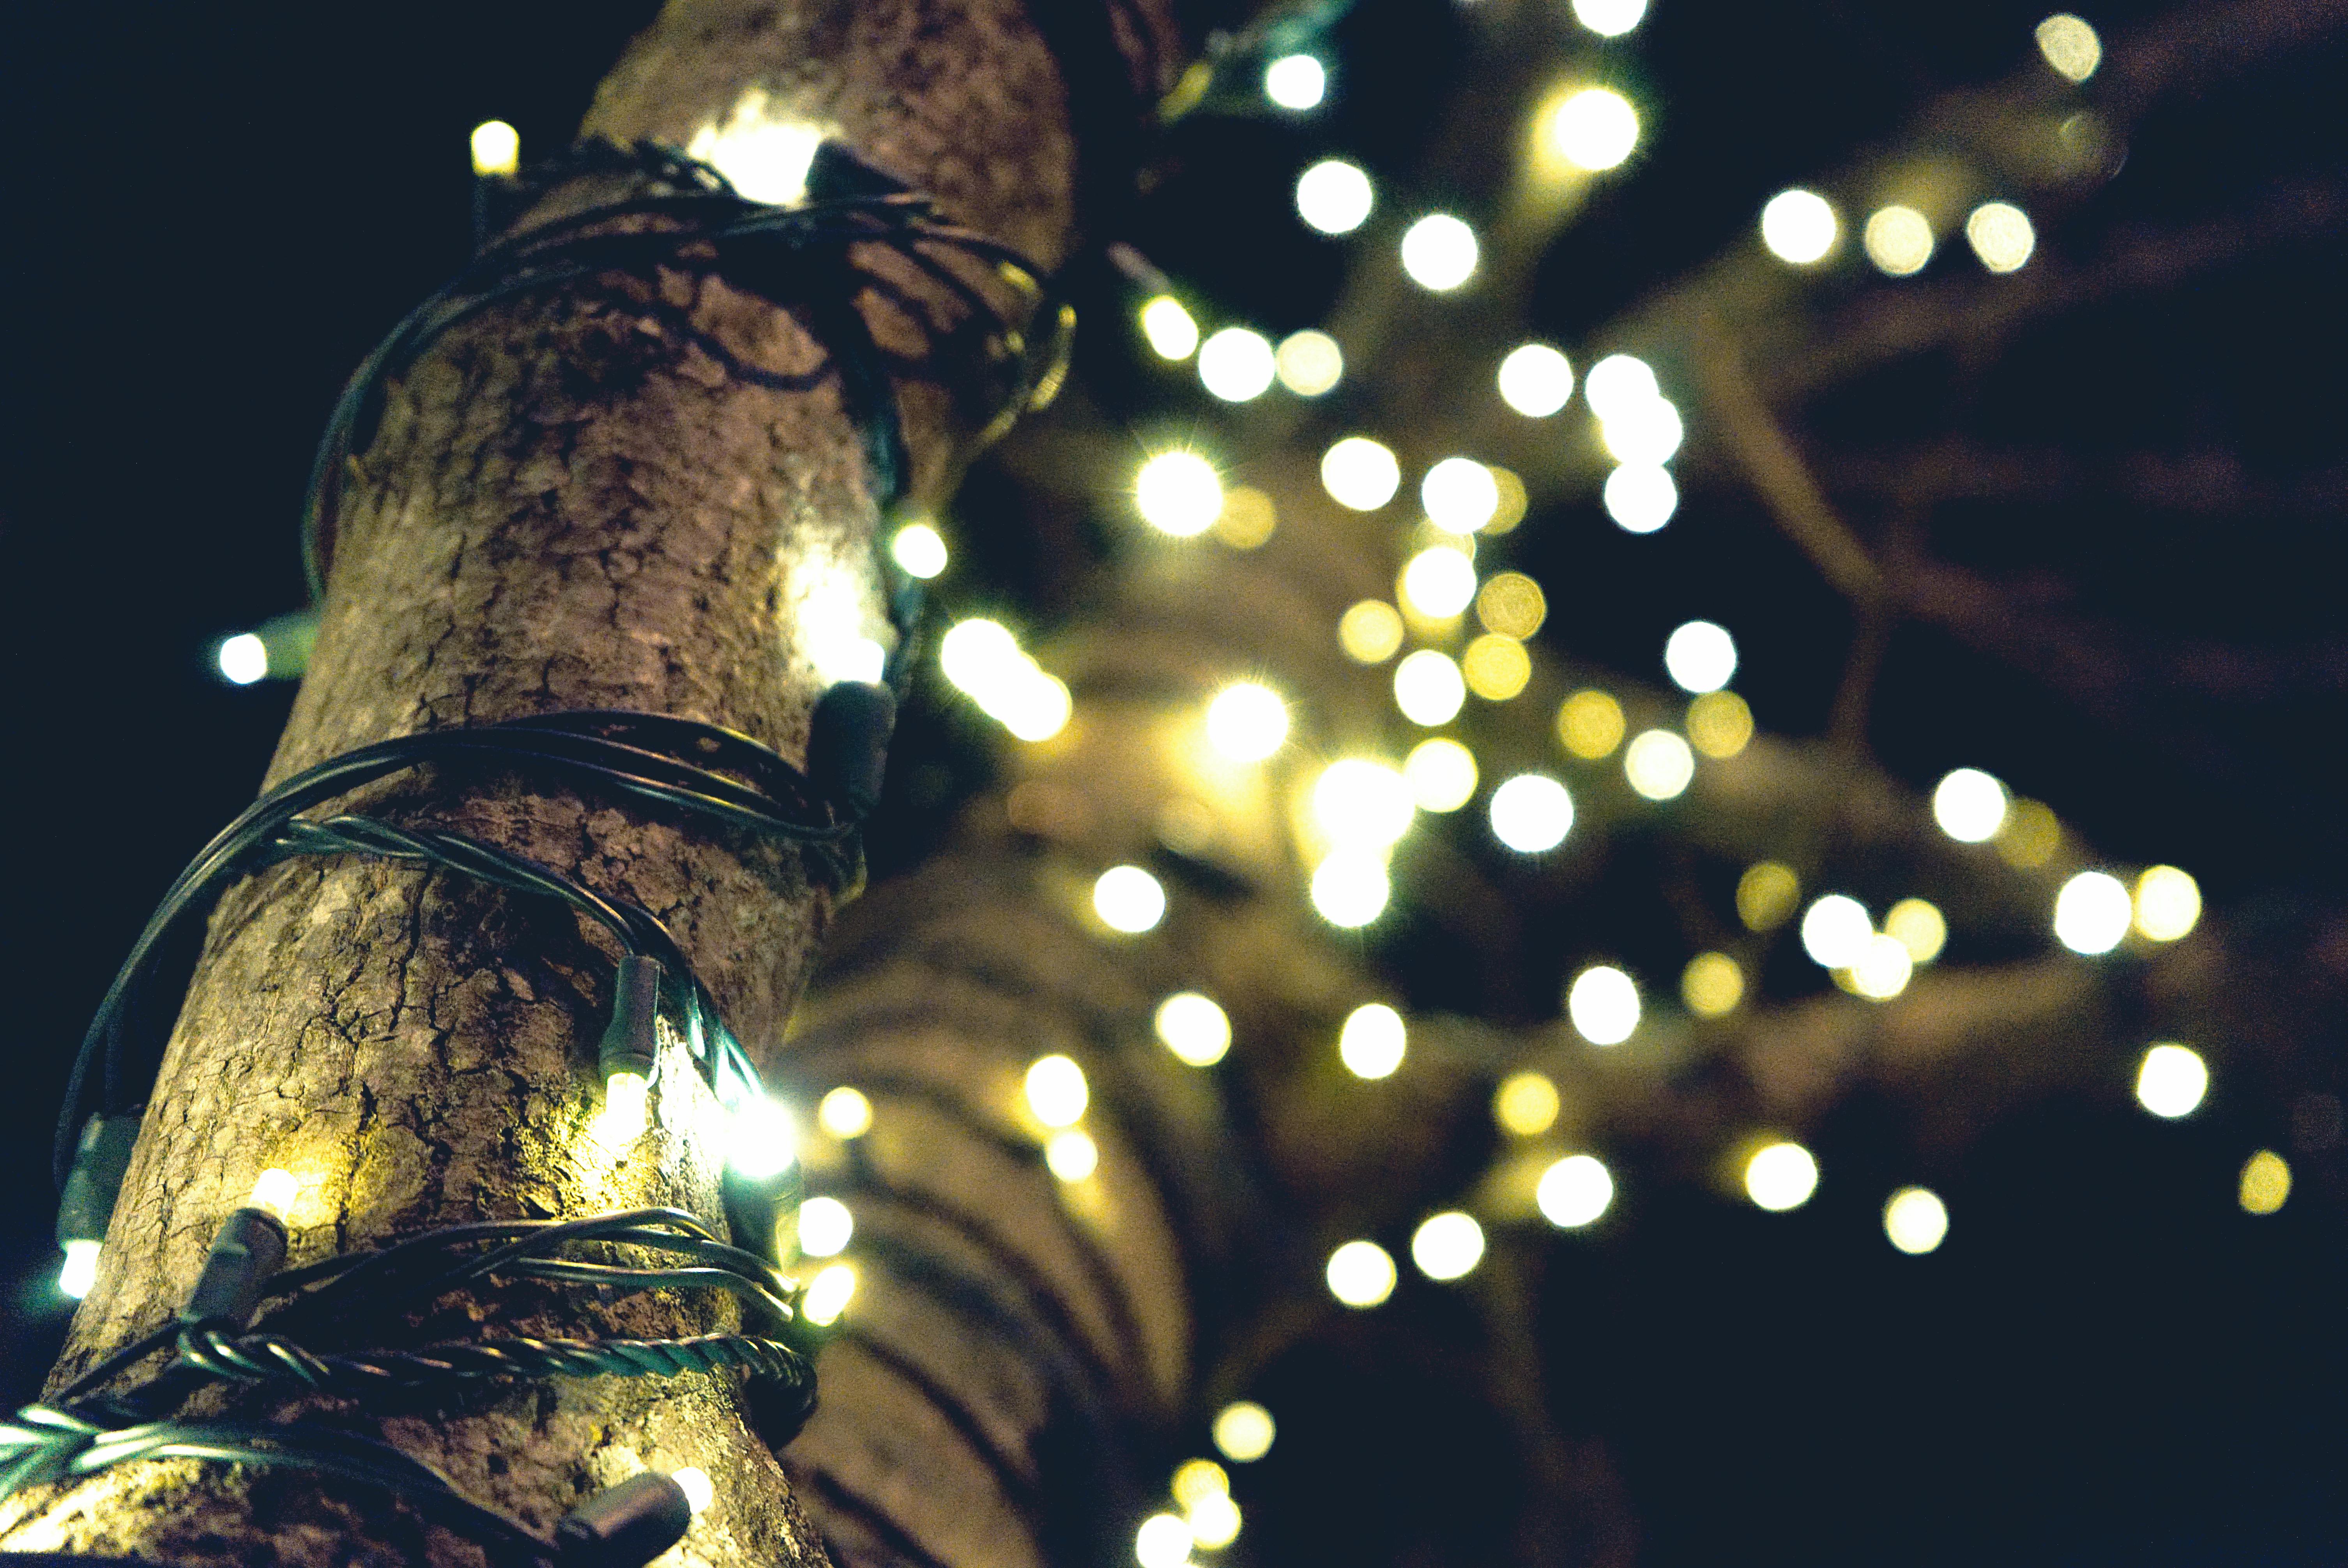 1000+ Beautiful Christmas Lights Photos · Pexels · Free Stock Photos